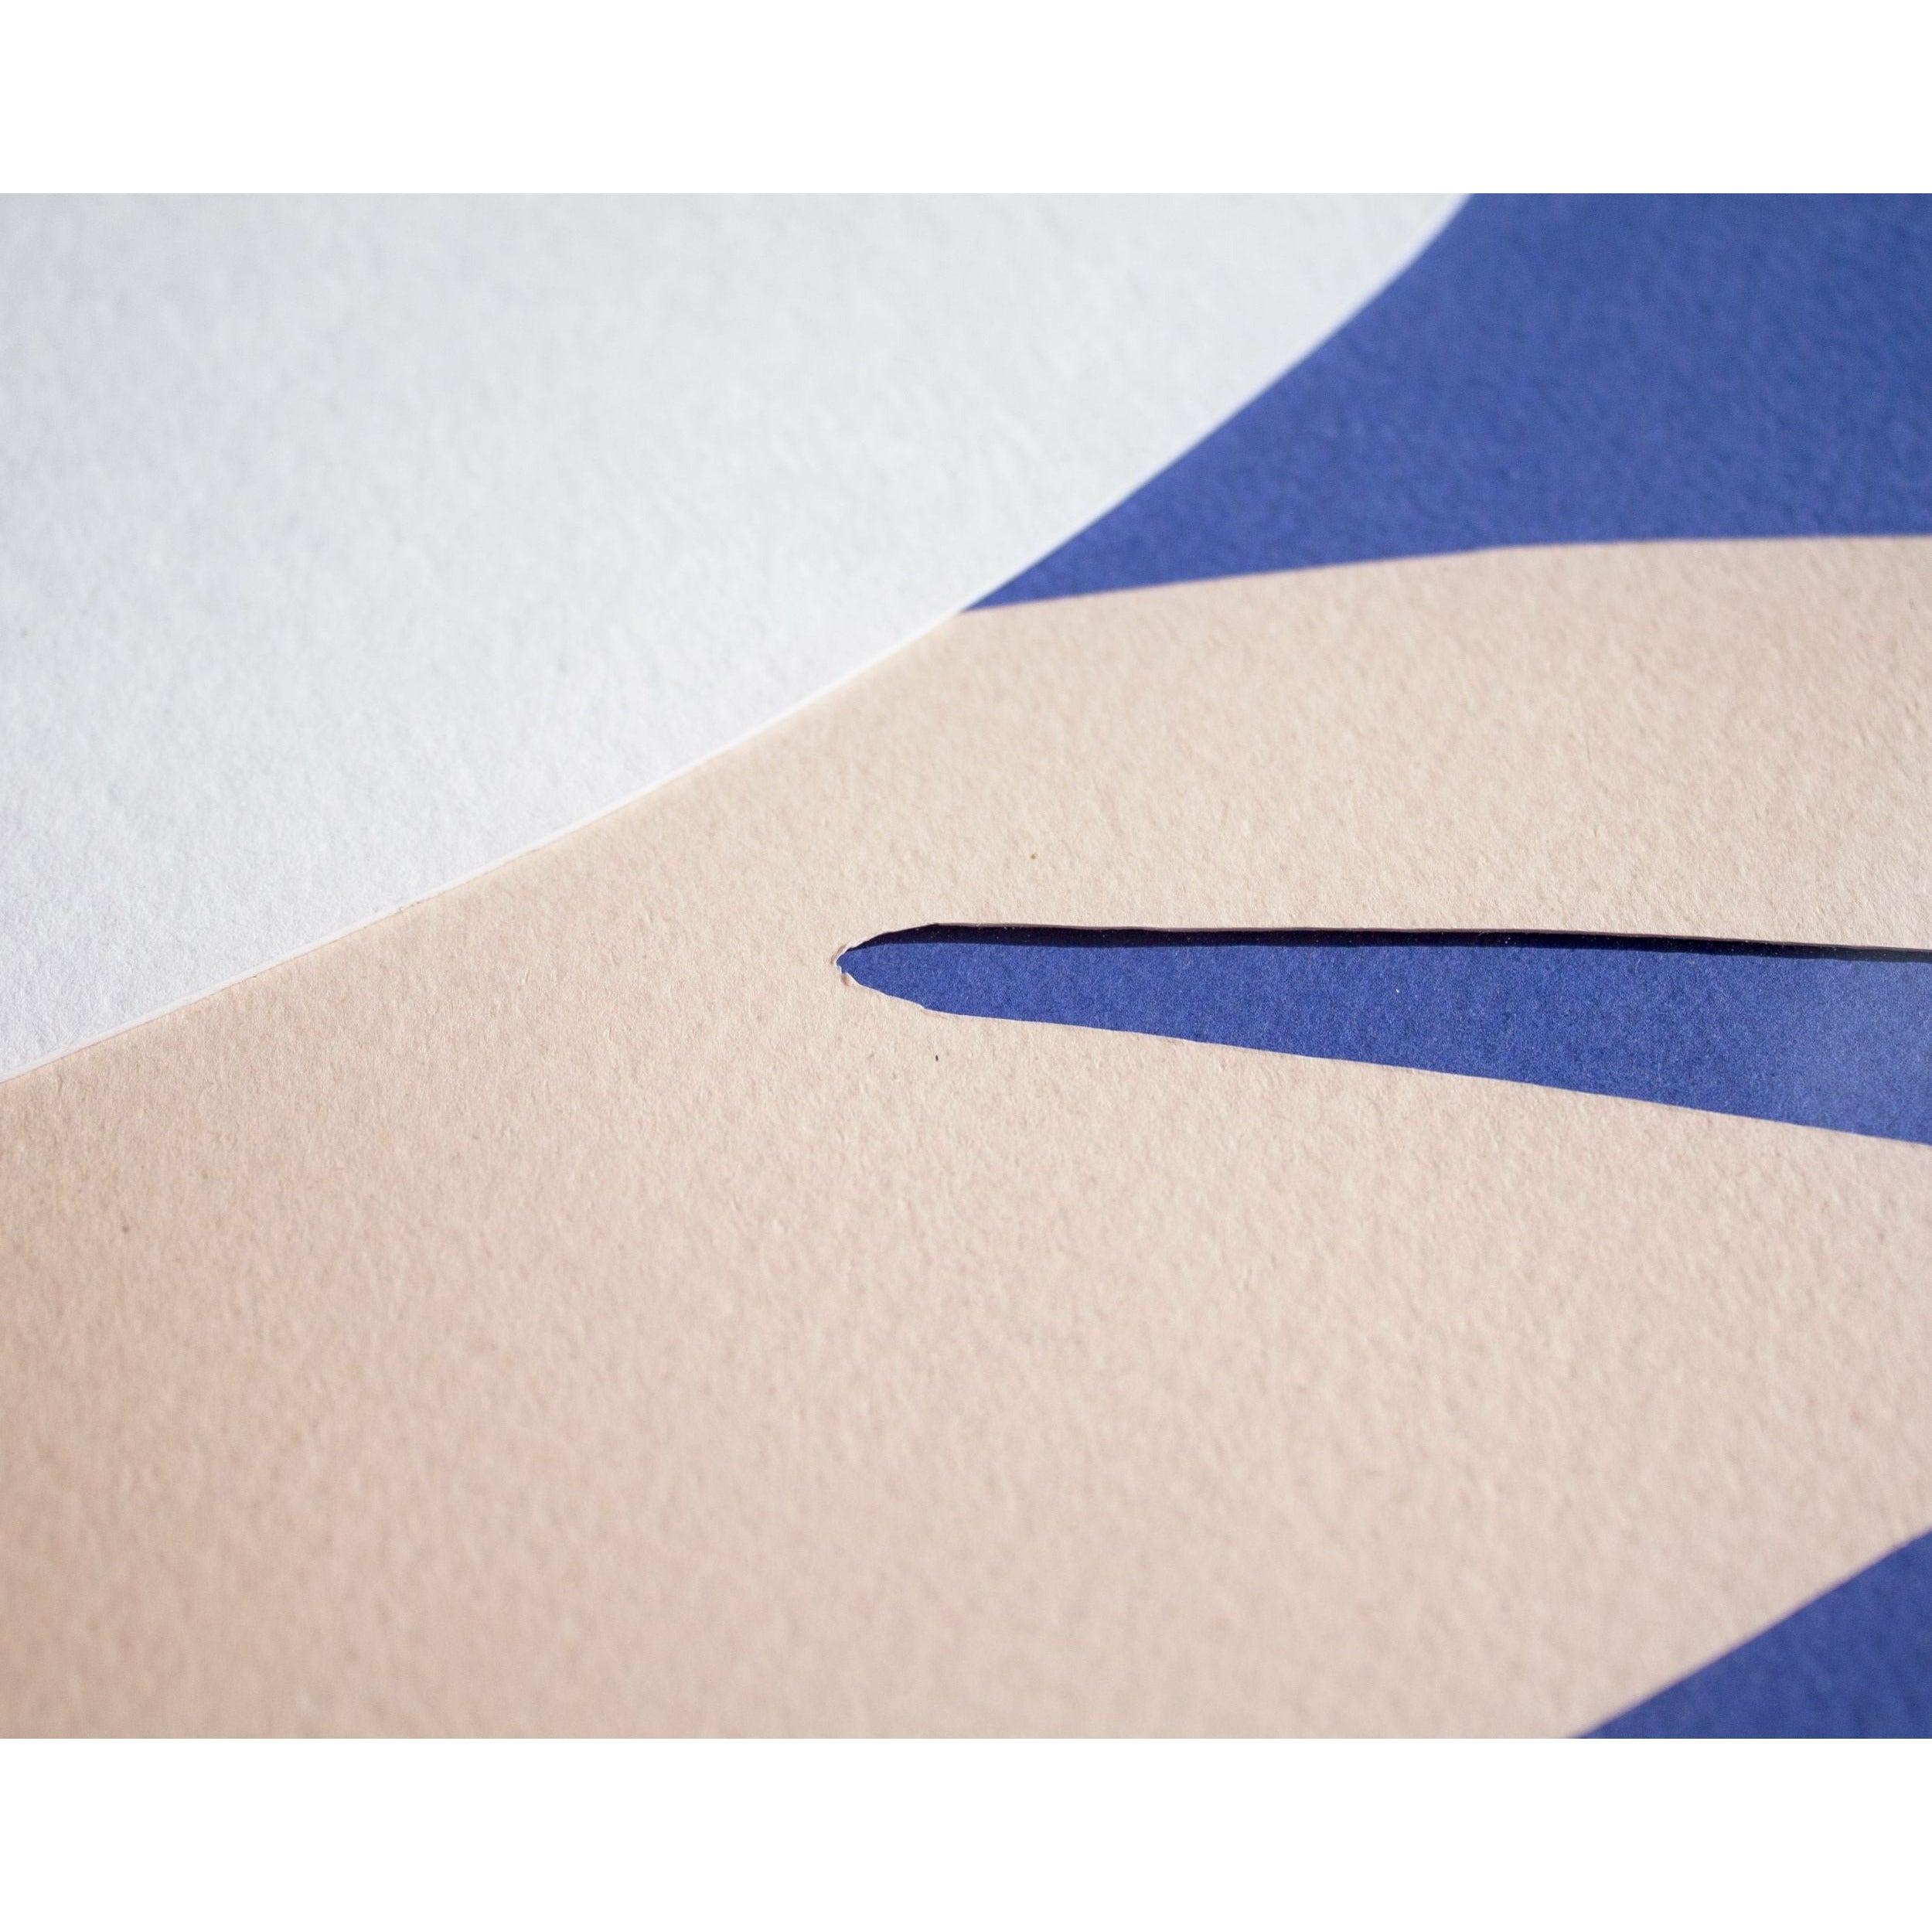 Póster de clip de papel de Swan de creación sin marco A5, fondo rosa